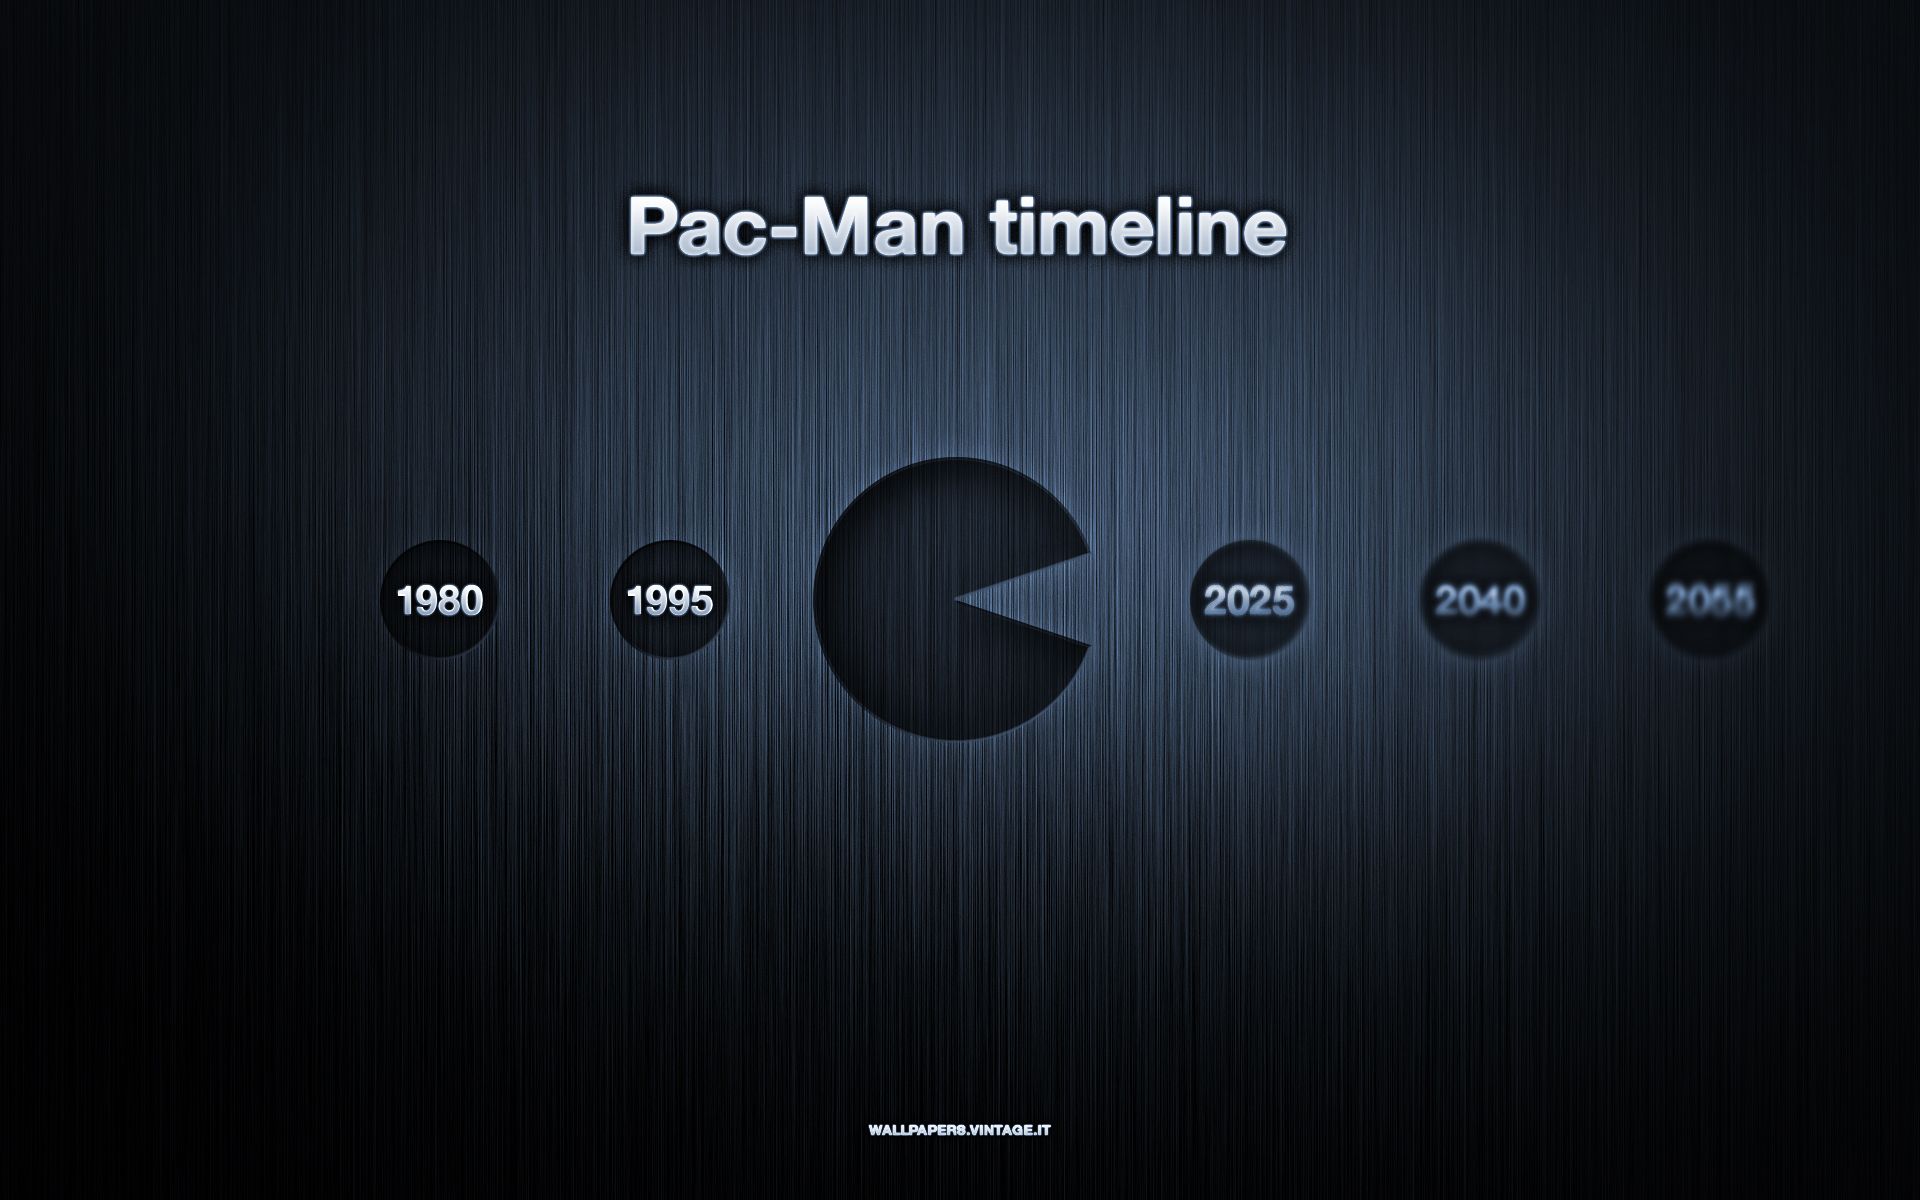 Galería de fondos de pantalla de Pacman